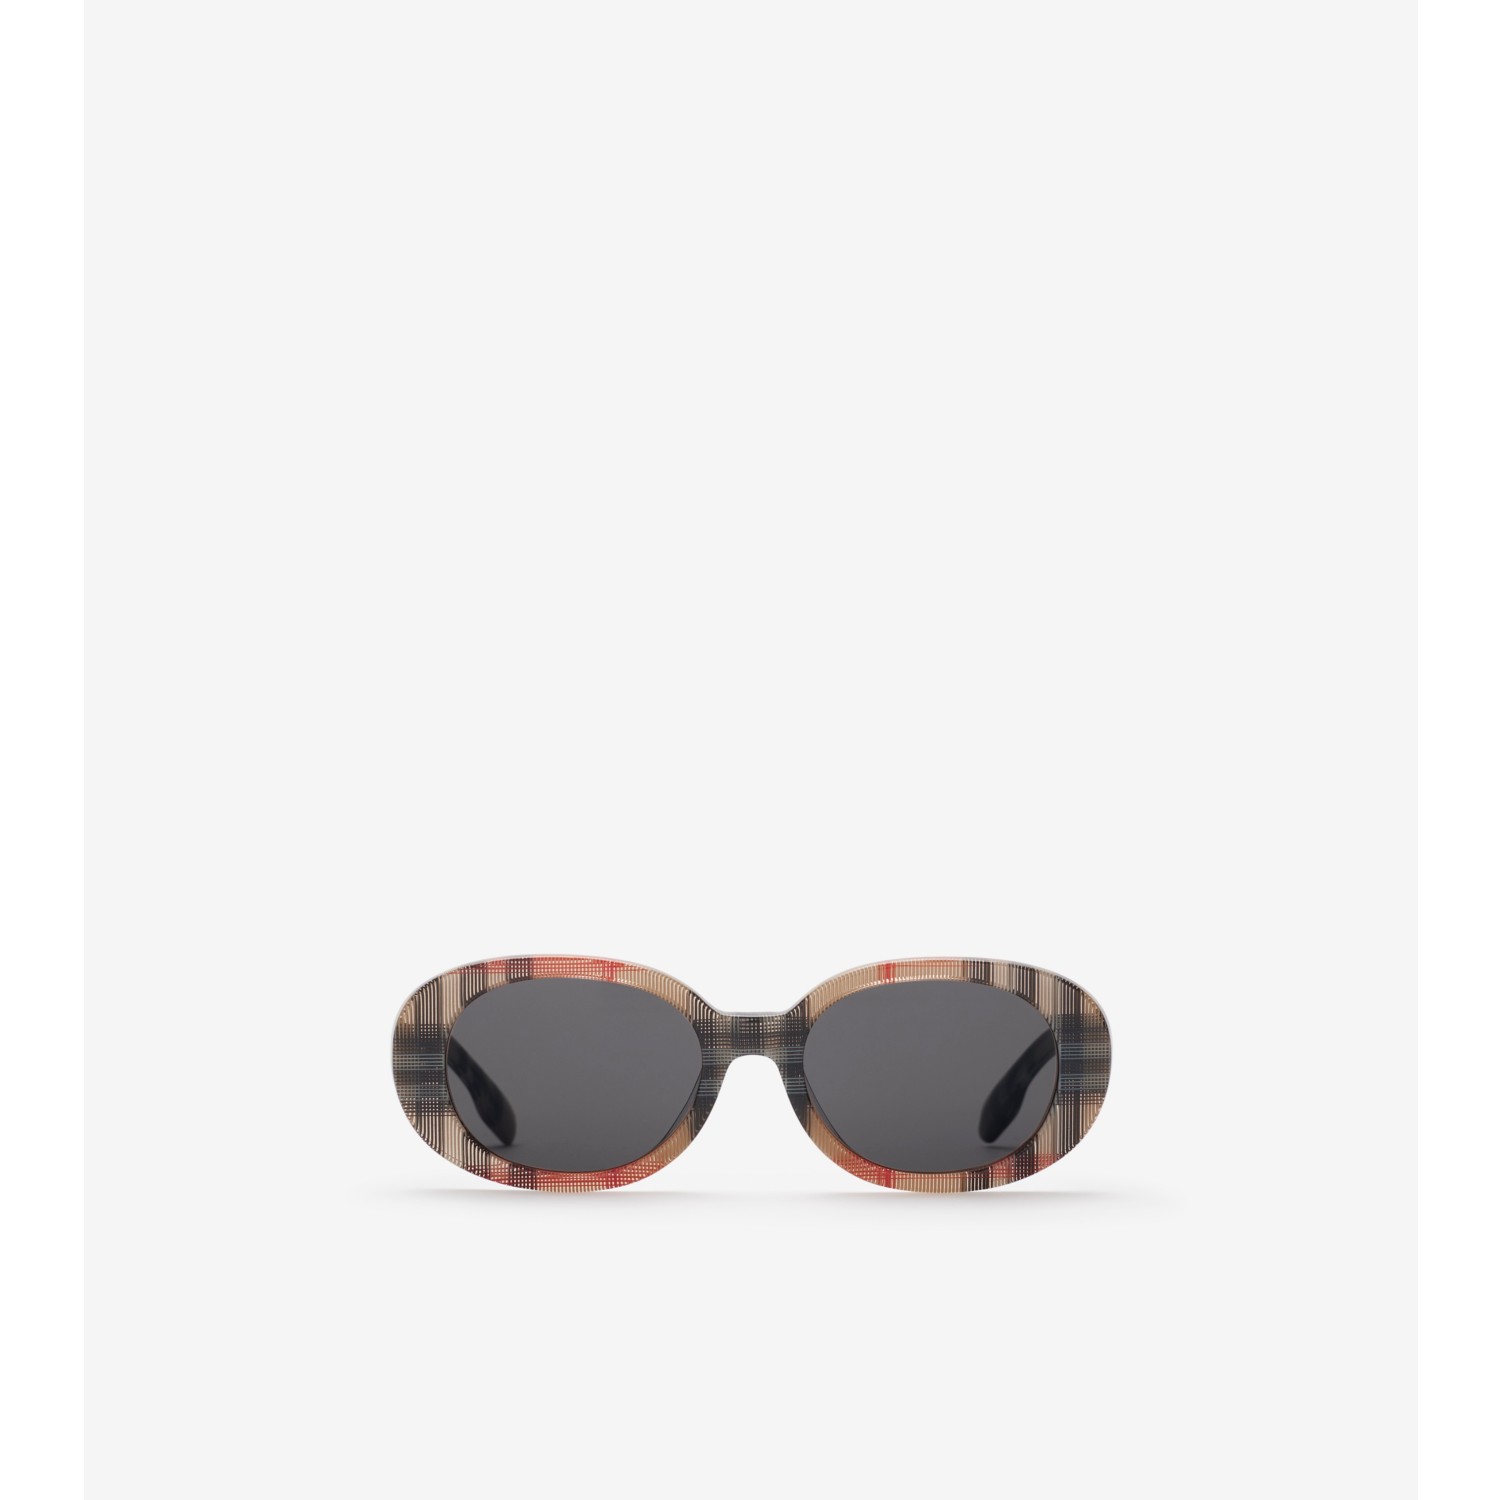 Óculos de sol Check com armação oval